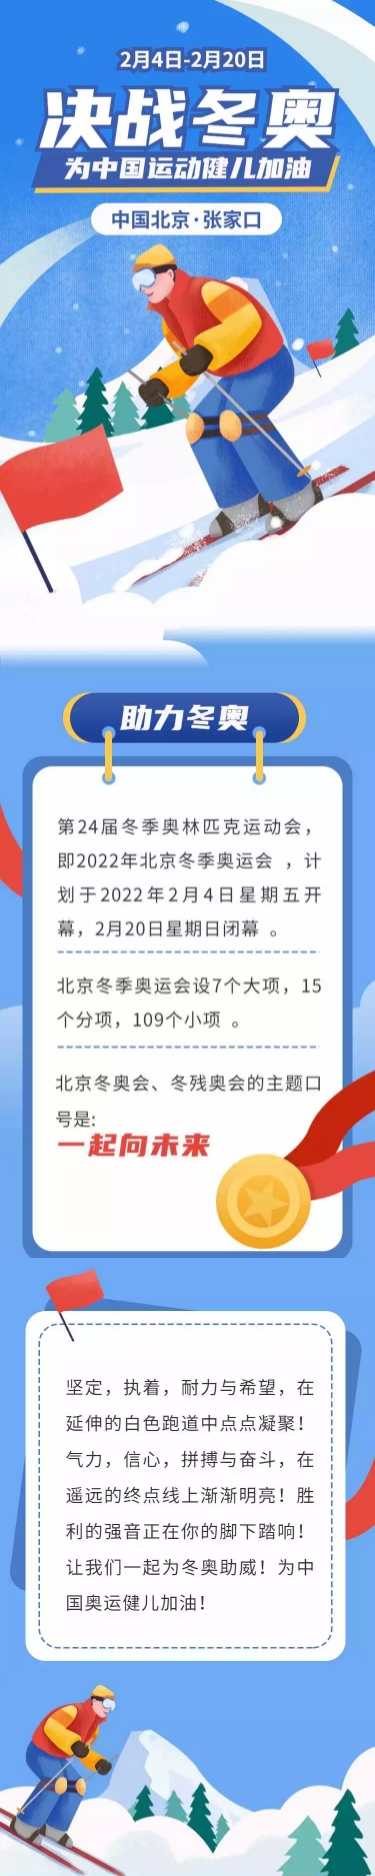 北京冬奥会举办时间图片